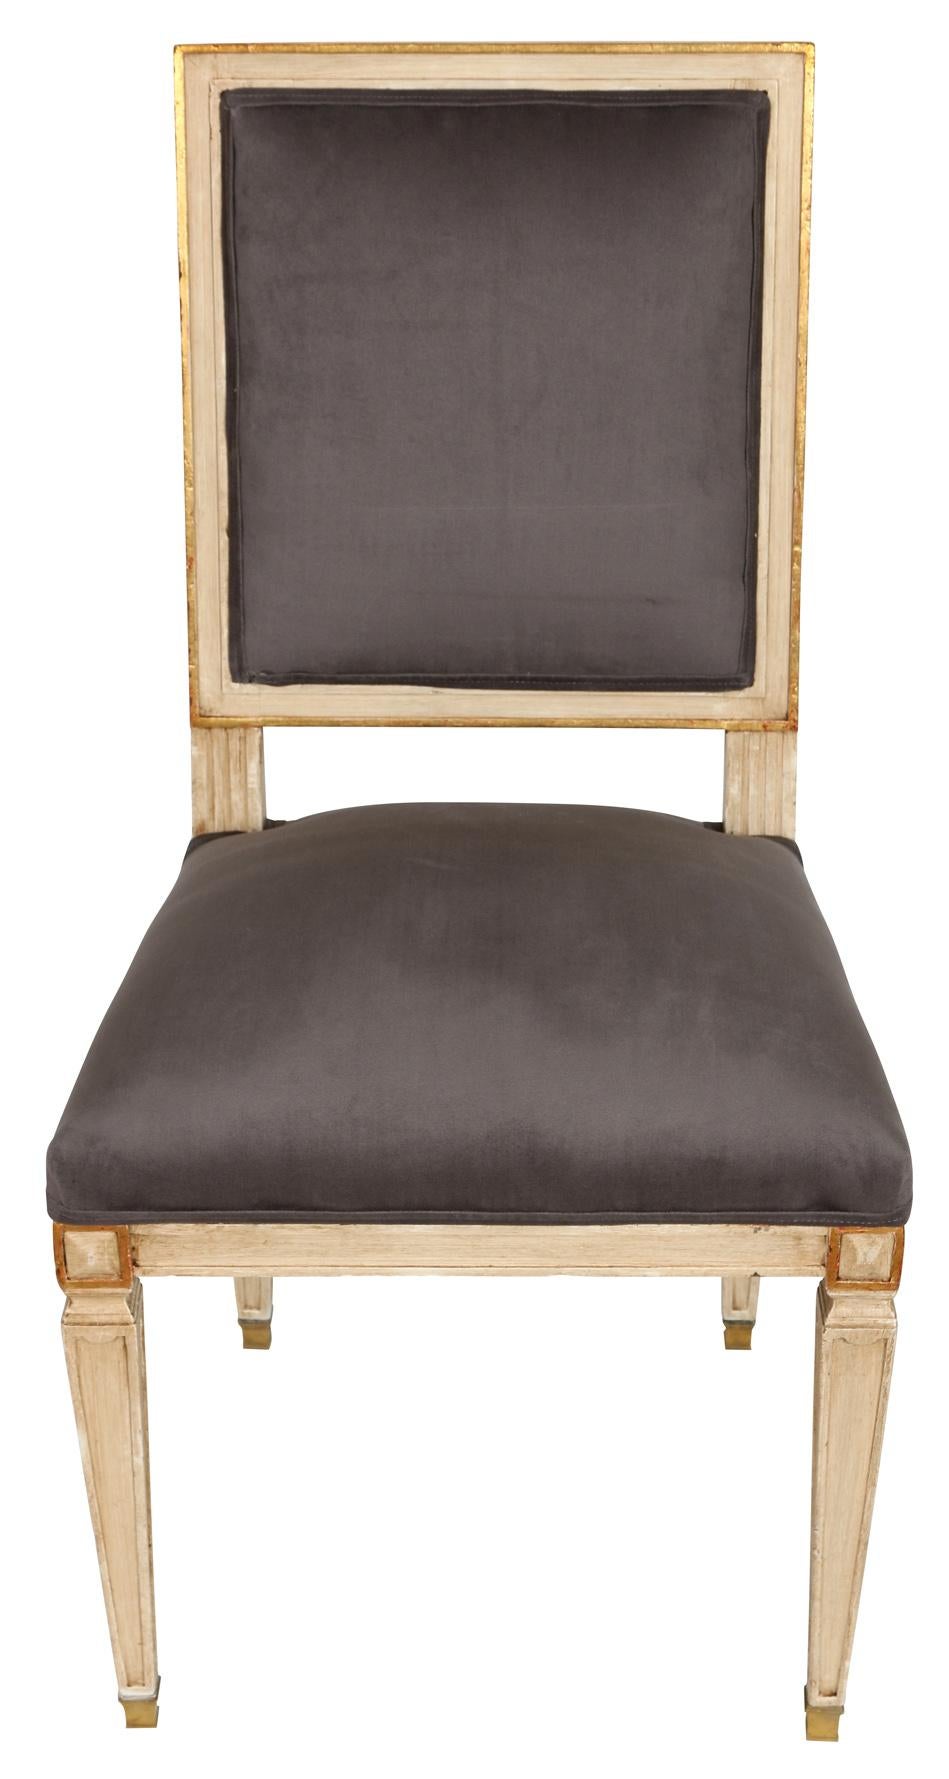 Wir lieben die schlichte Eleganz dieser Esszimmerstühle im Stil Louis XVI. Die hellgrau lackierten Stühle haben eine quadratische Rückenlehne und Sitzfläche. Die Beine sind quadratisch und verjüngt mit Messing-Saborts und der Rahmen weist feine